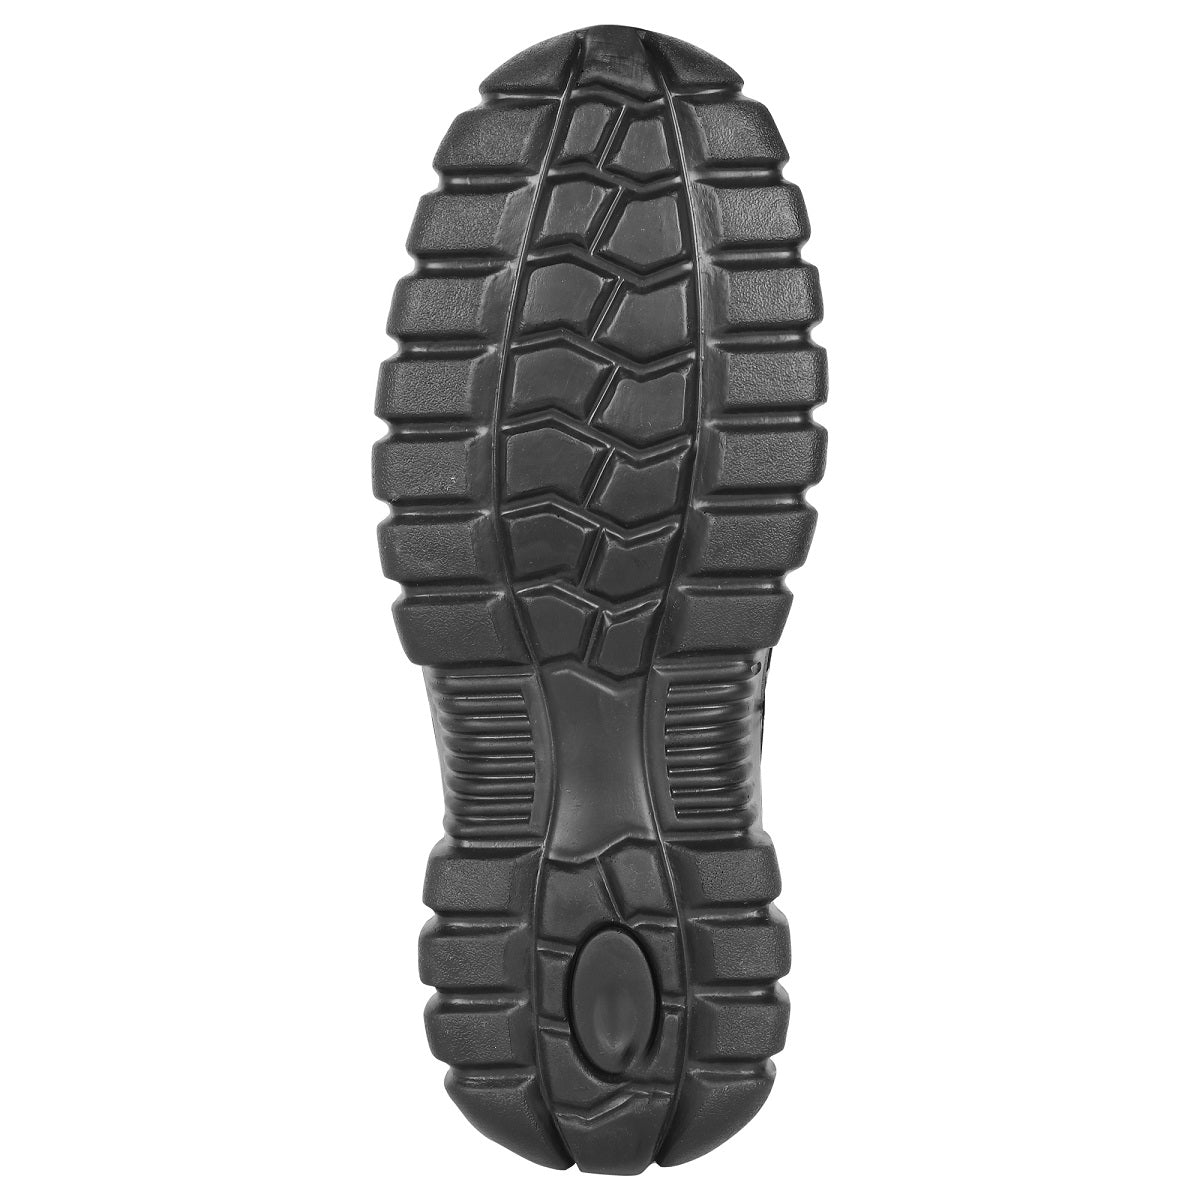 SeeandWear Steel Toe Safety Shoes for Men - SeeandWear